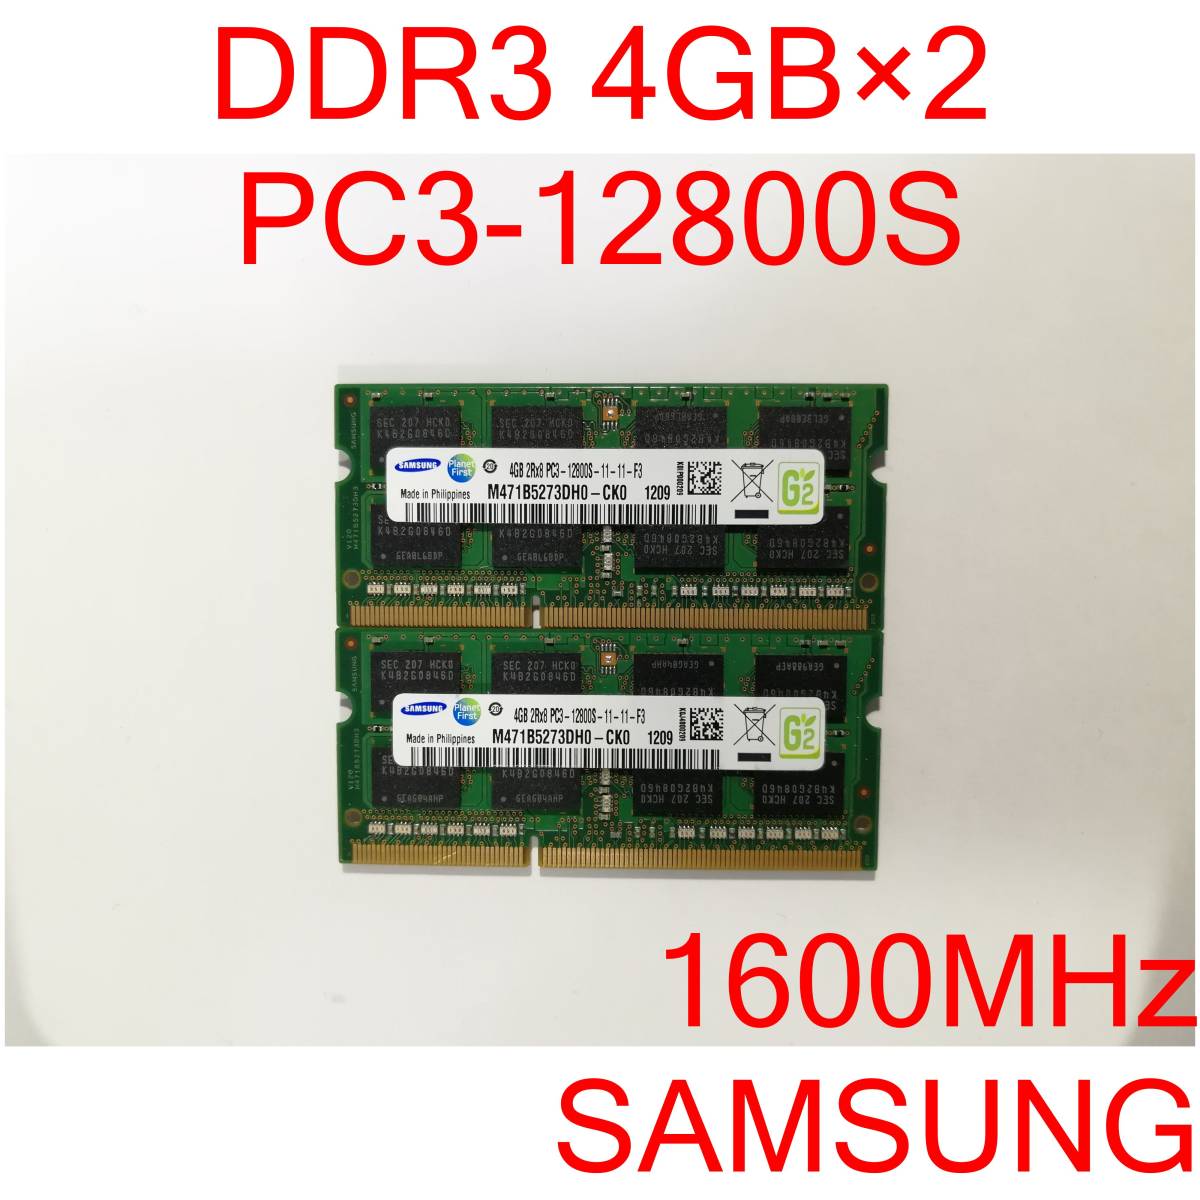 DDR3 SO-DIMM PC3-12800S 4GB 2枚 計8GB ノートパソコン用メモリ SAMSUNG M471B5273DH0-CK0 [D3S#32]